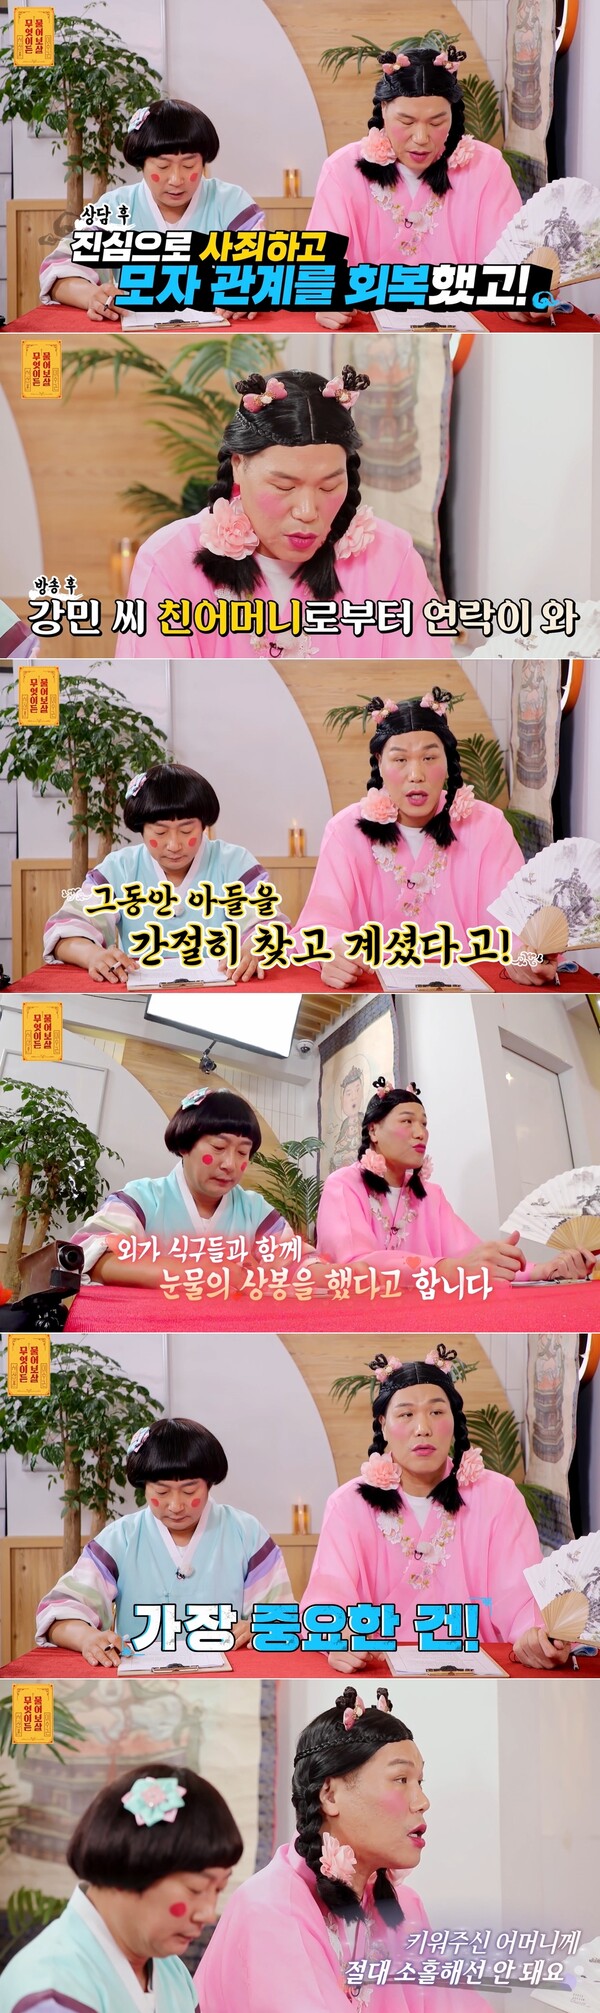 강민씨의 근황과 서장훈의 조언 (출처 : KBS Joy) 